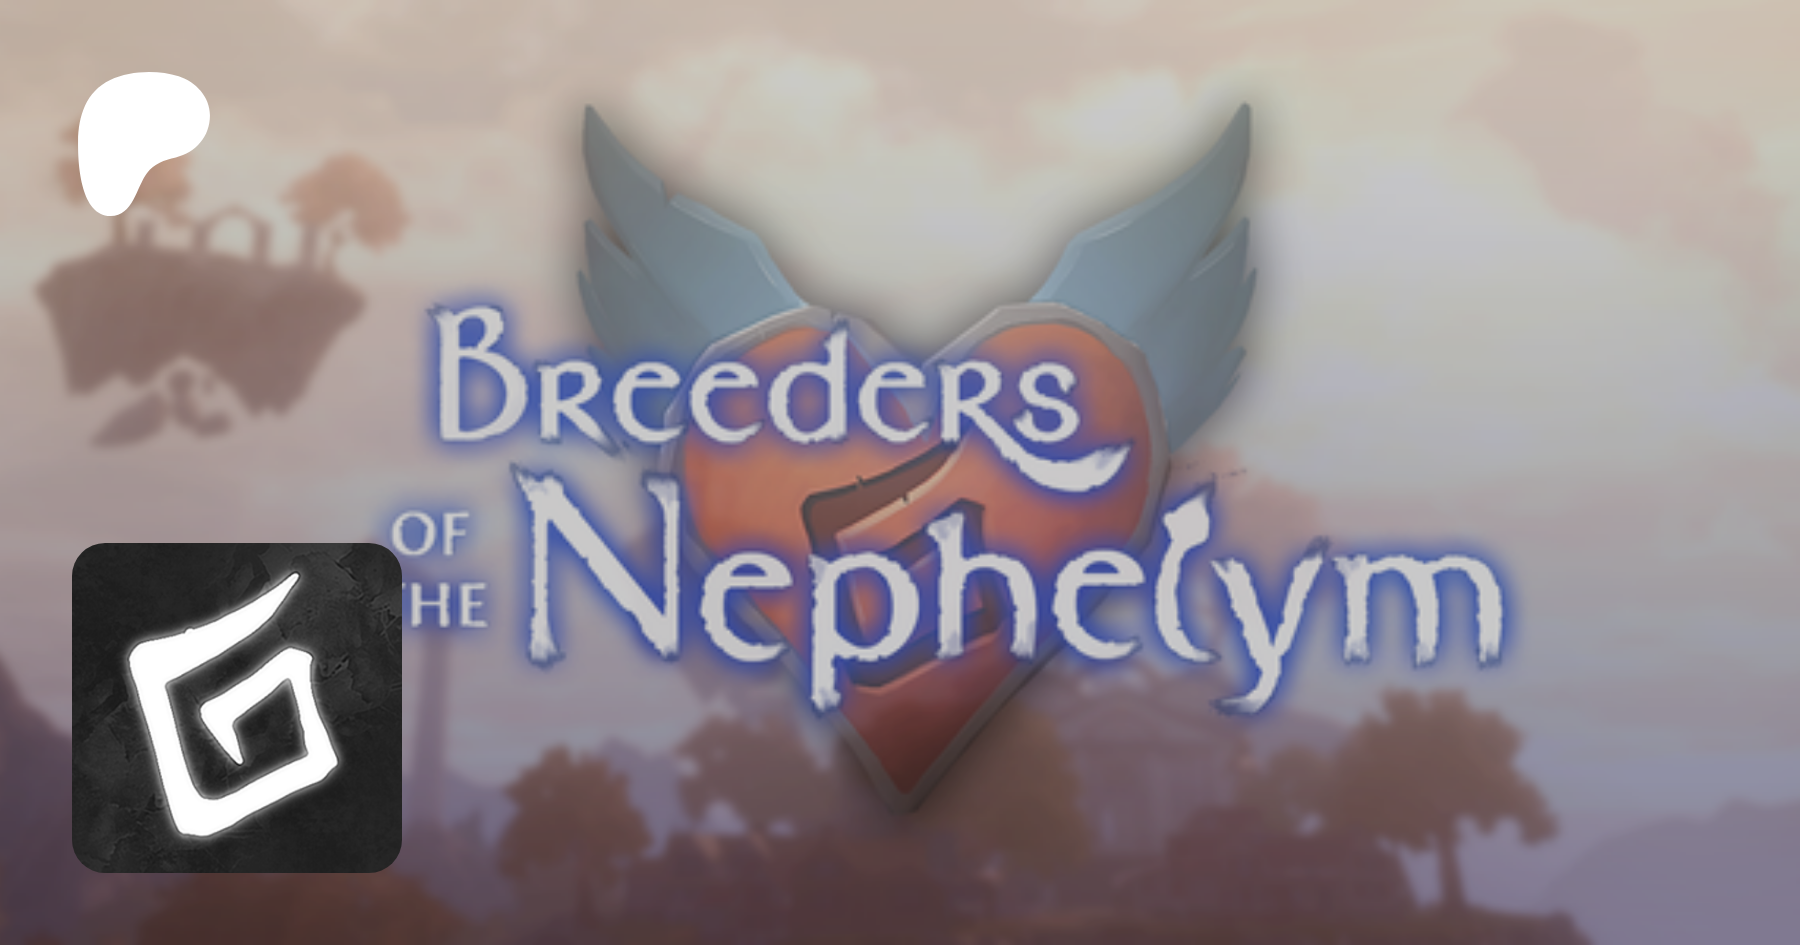 Breeders nephelym